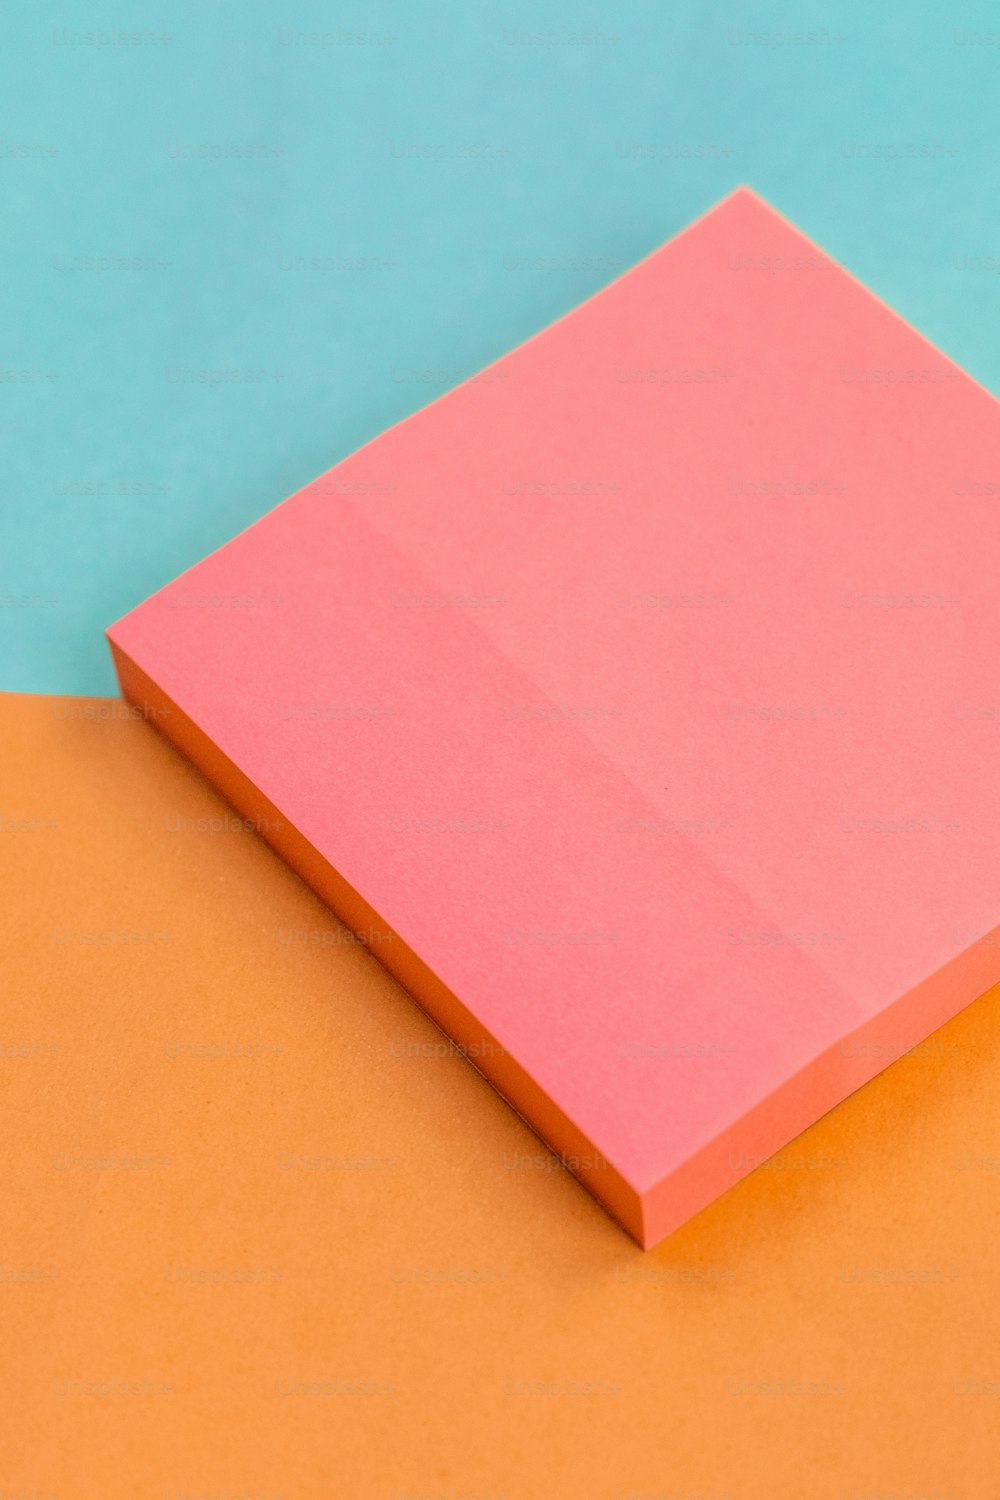 un pezzo di carta rosa seduto sopra una superficie arancione e blu